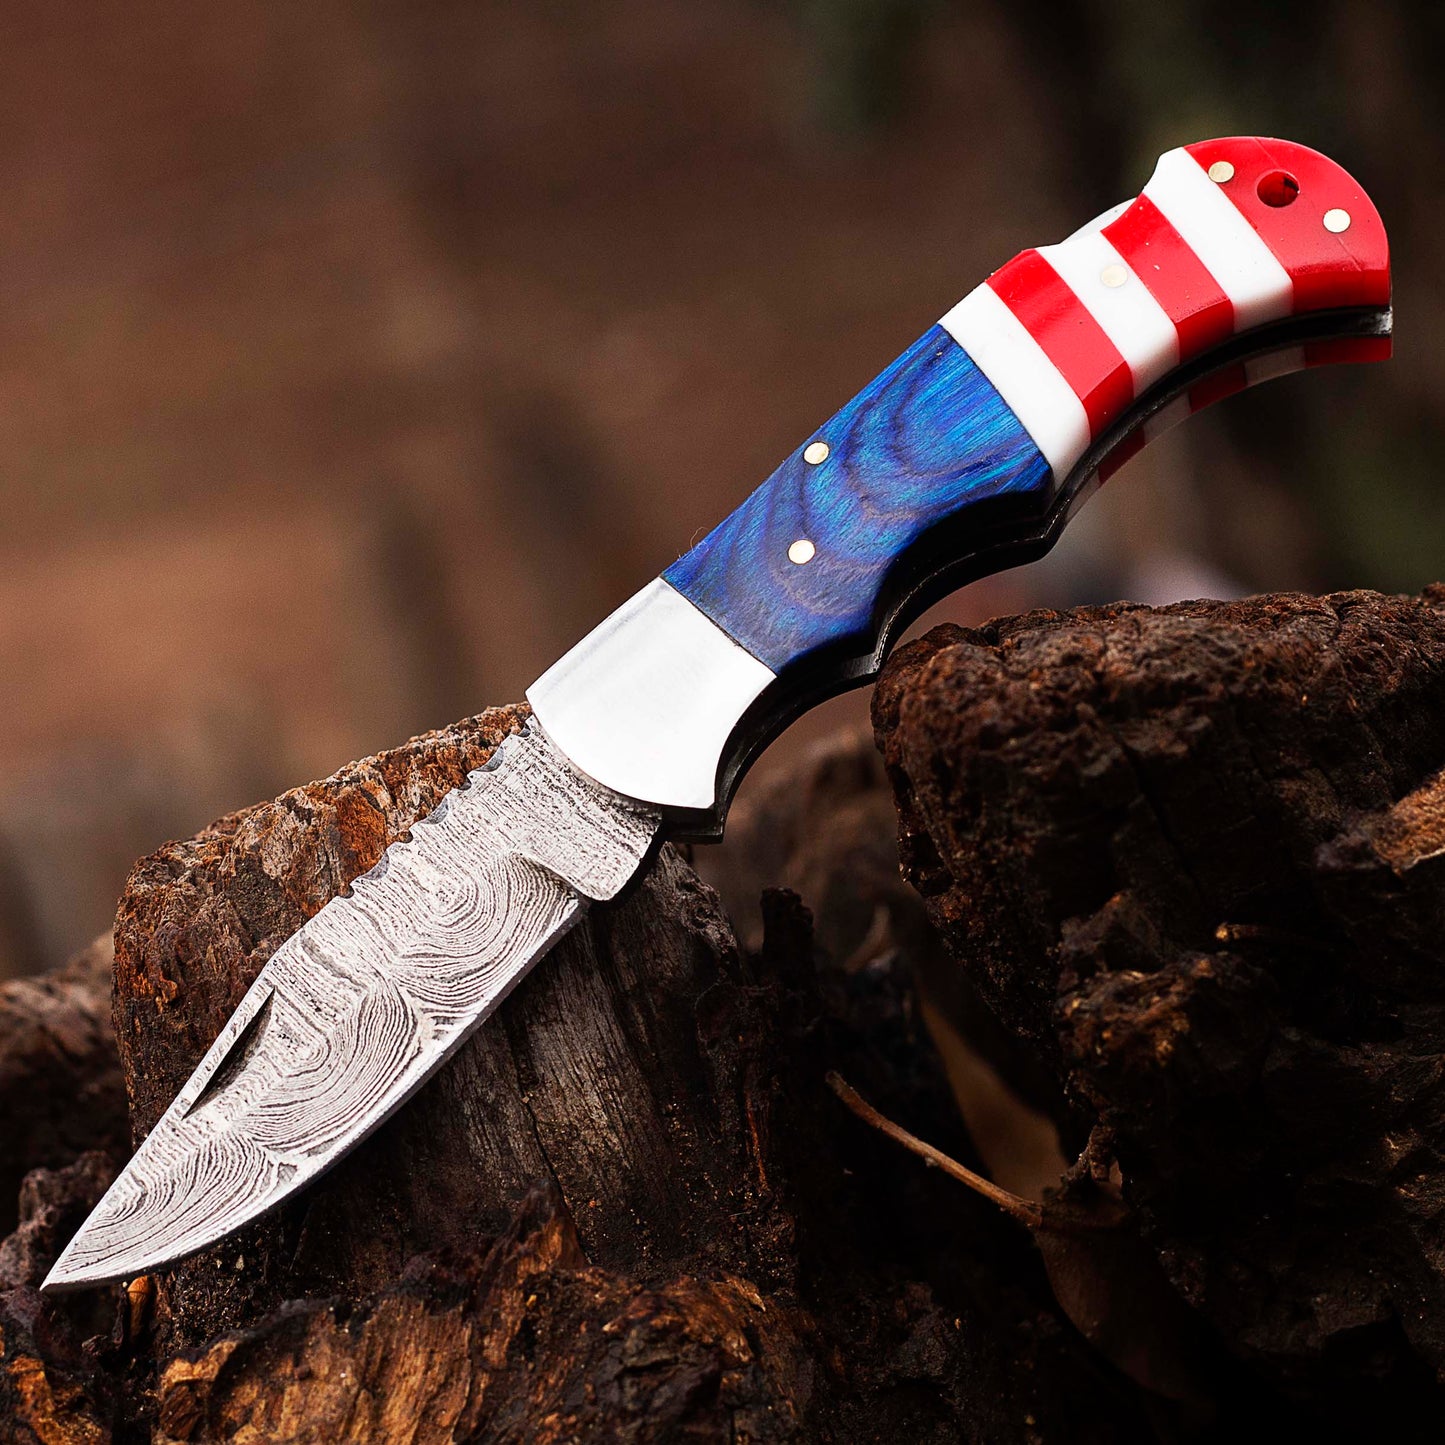 Damascus Pocket knife, Folding blade, Every Day Carry Knife , Damascus Folder, Best Gift For Him, USA Flag Handle Knife, American Flag Handle Pocket / Folding Knives Handmade Knife for Men USA